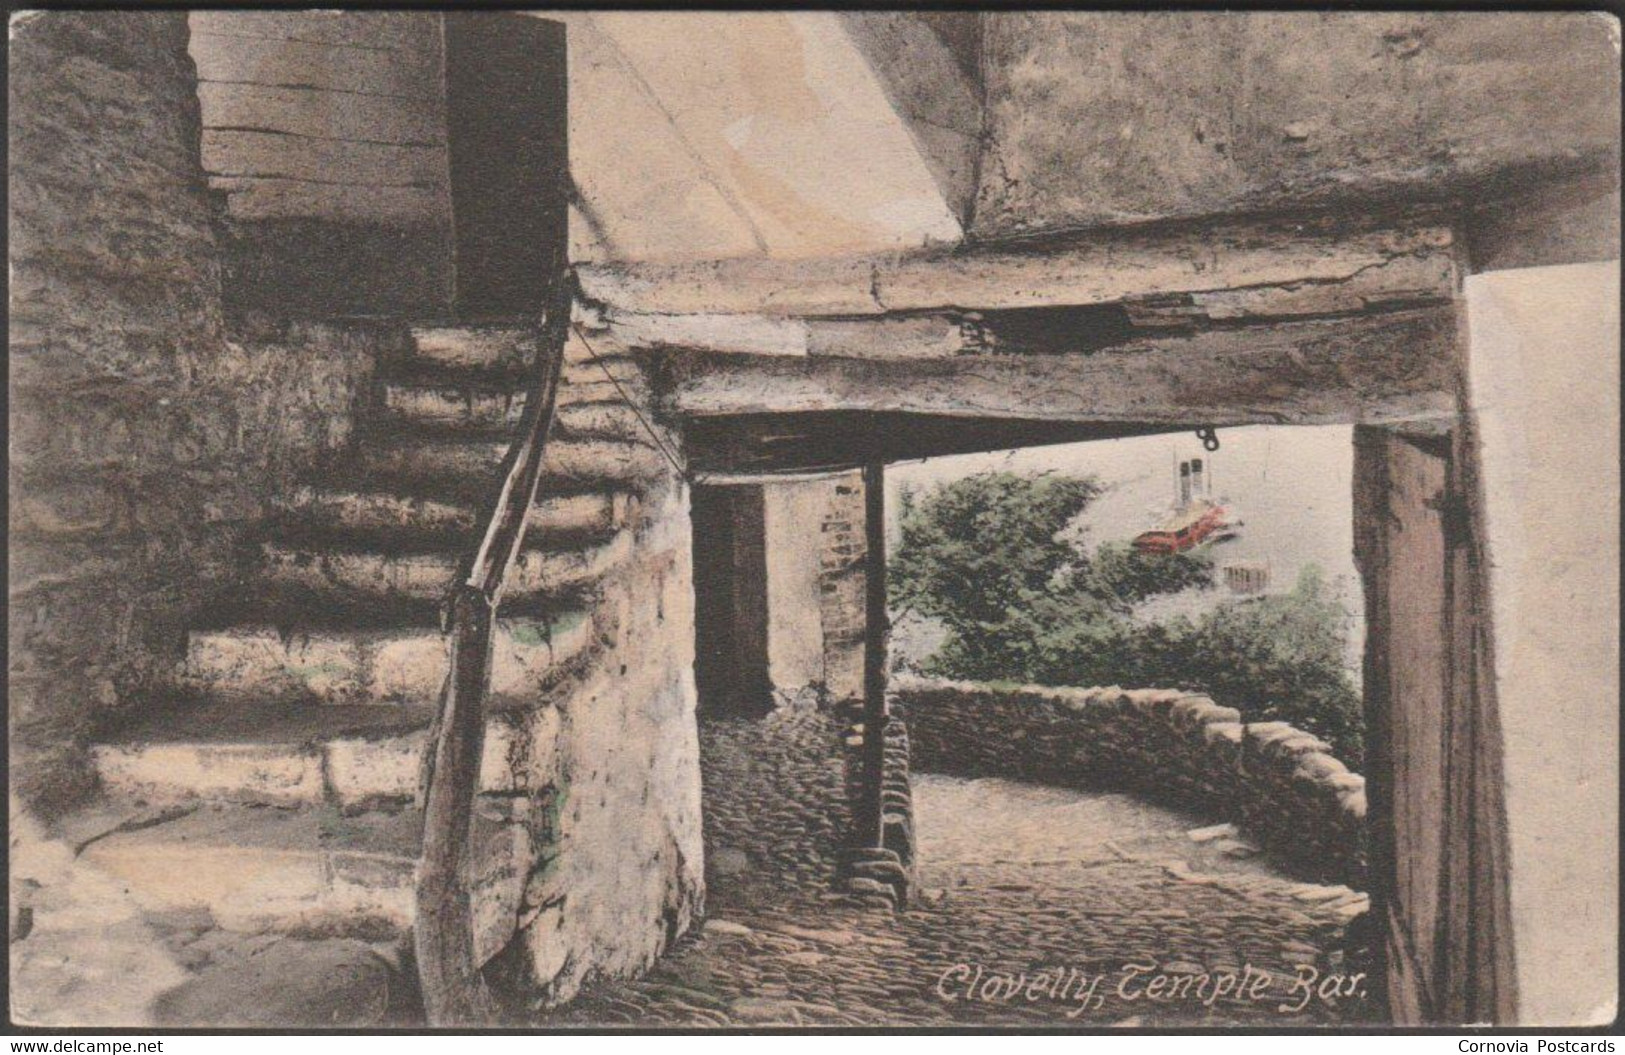 Temple Bar, Clovelly, Devon, C.1905-10 - Frith's Postcard - Clovelly